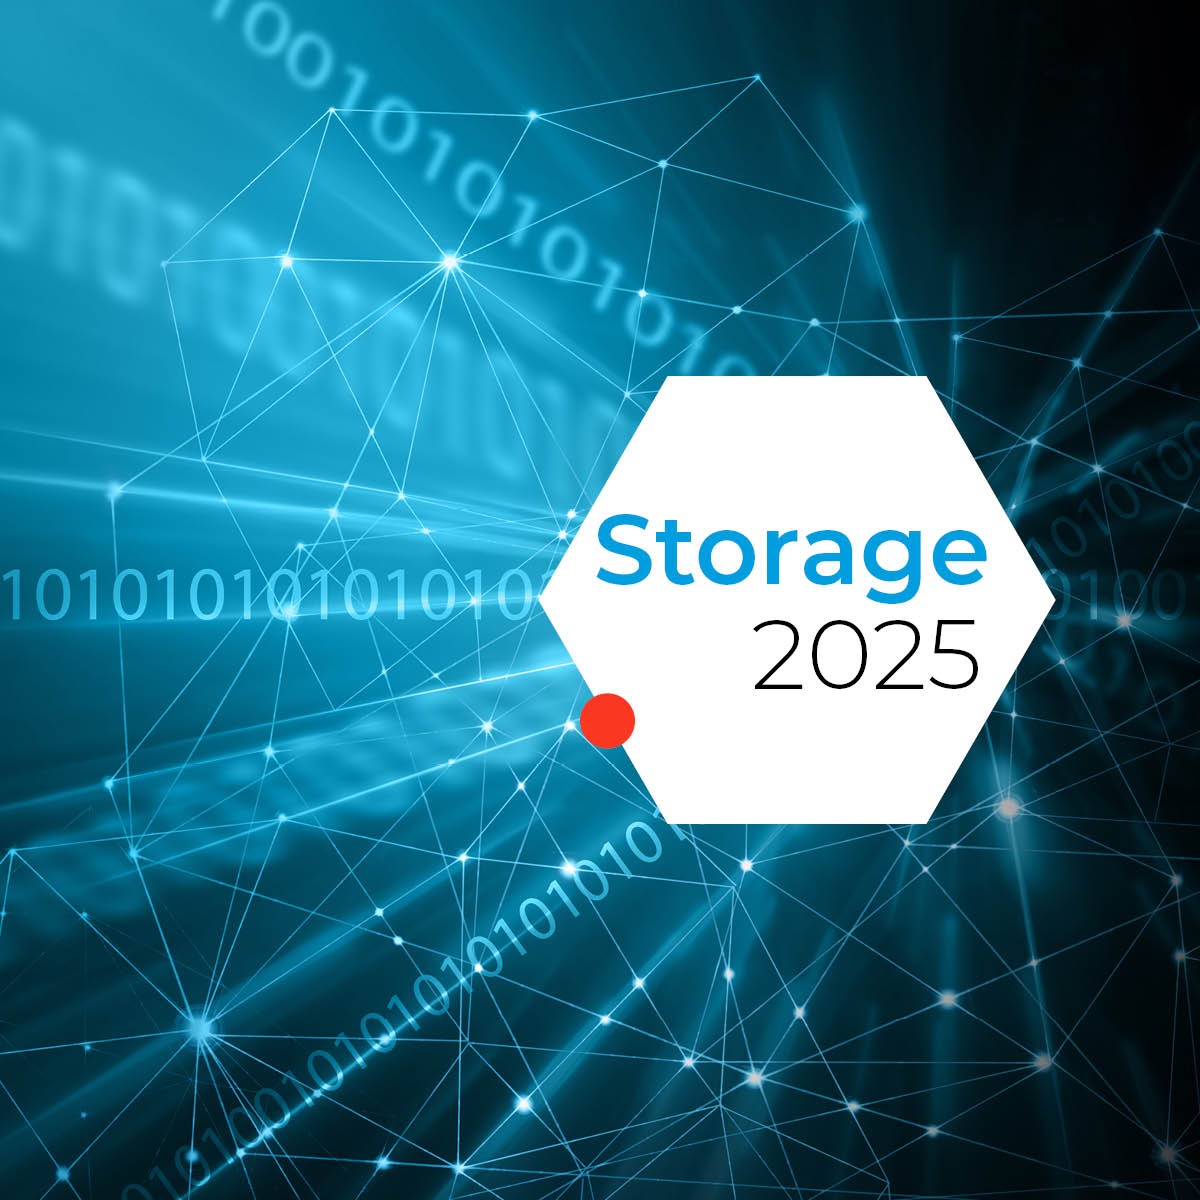 Storage 2025 Trends en ontwikkelingen Download the whitepaper